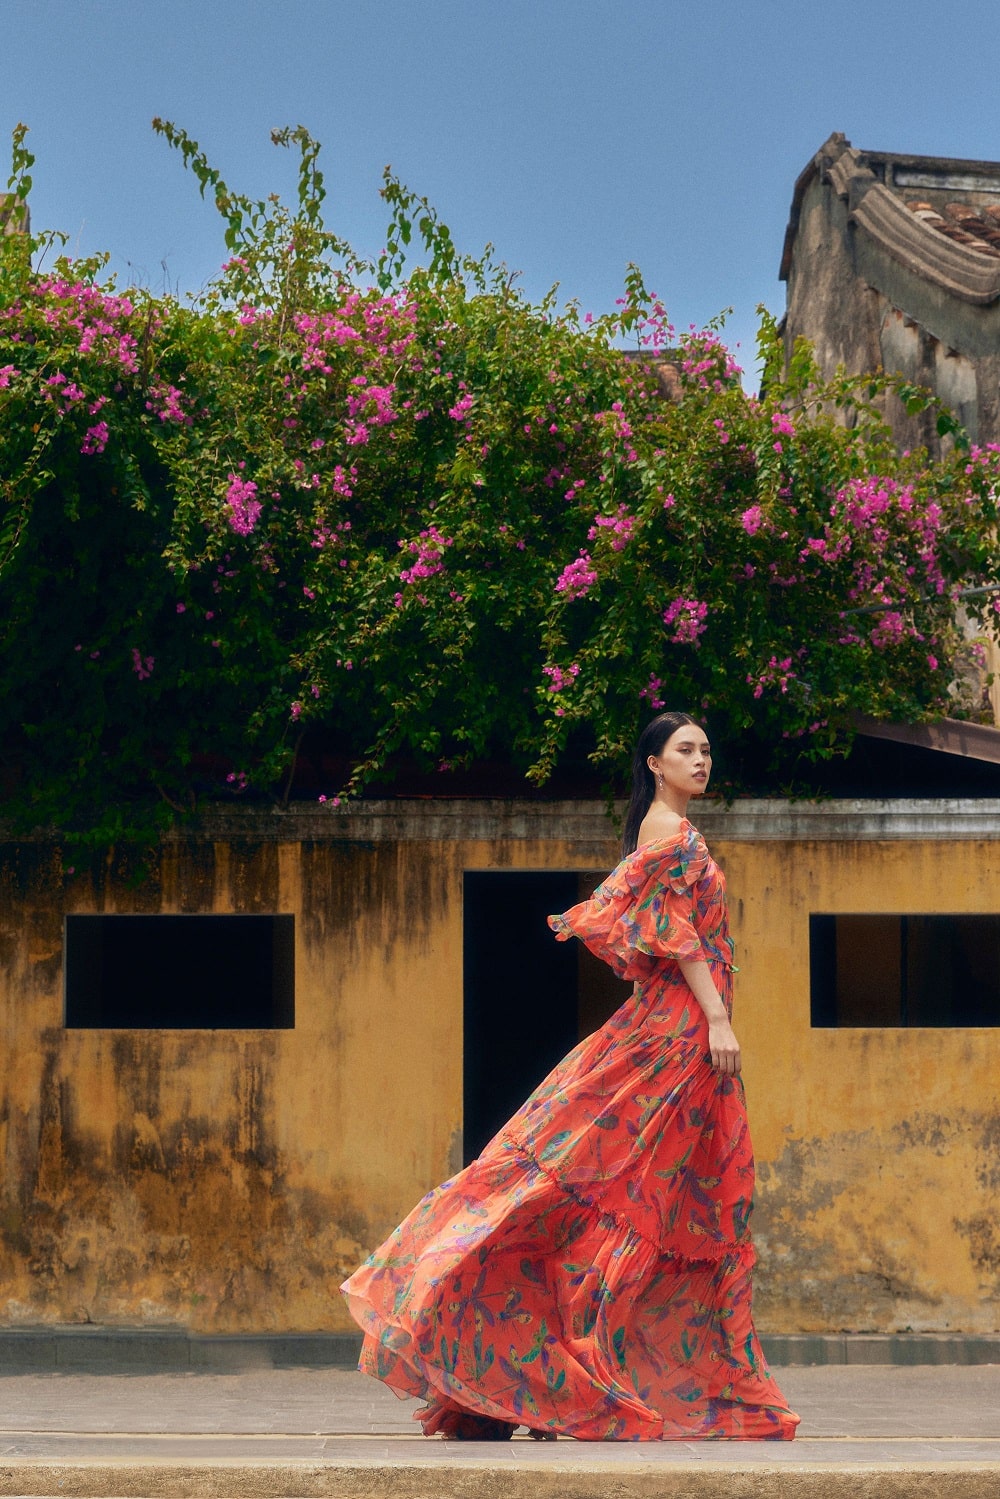 Phố cổ Hội An đậm chất nghệ thuật qua shoot hình của Hoa hậu Tiểu Vy 3